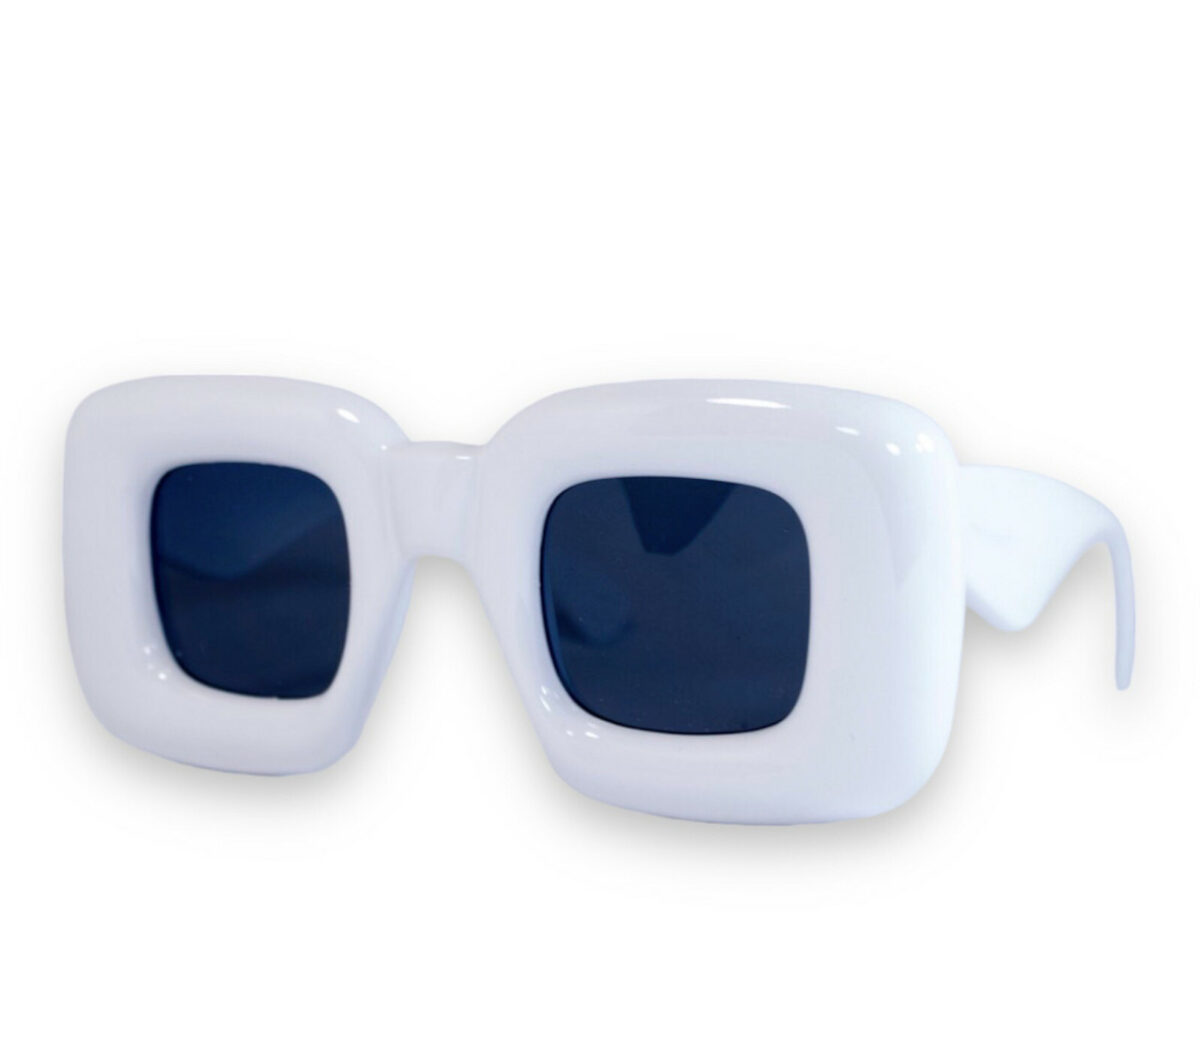 Оригінальні сонцезахисні жіночі окуляри білі 1330-6 topseason